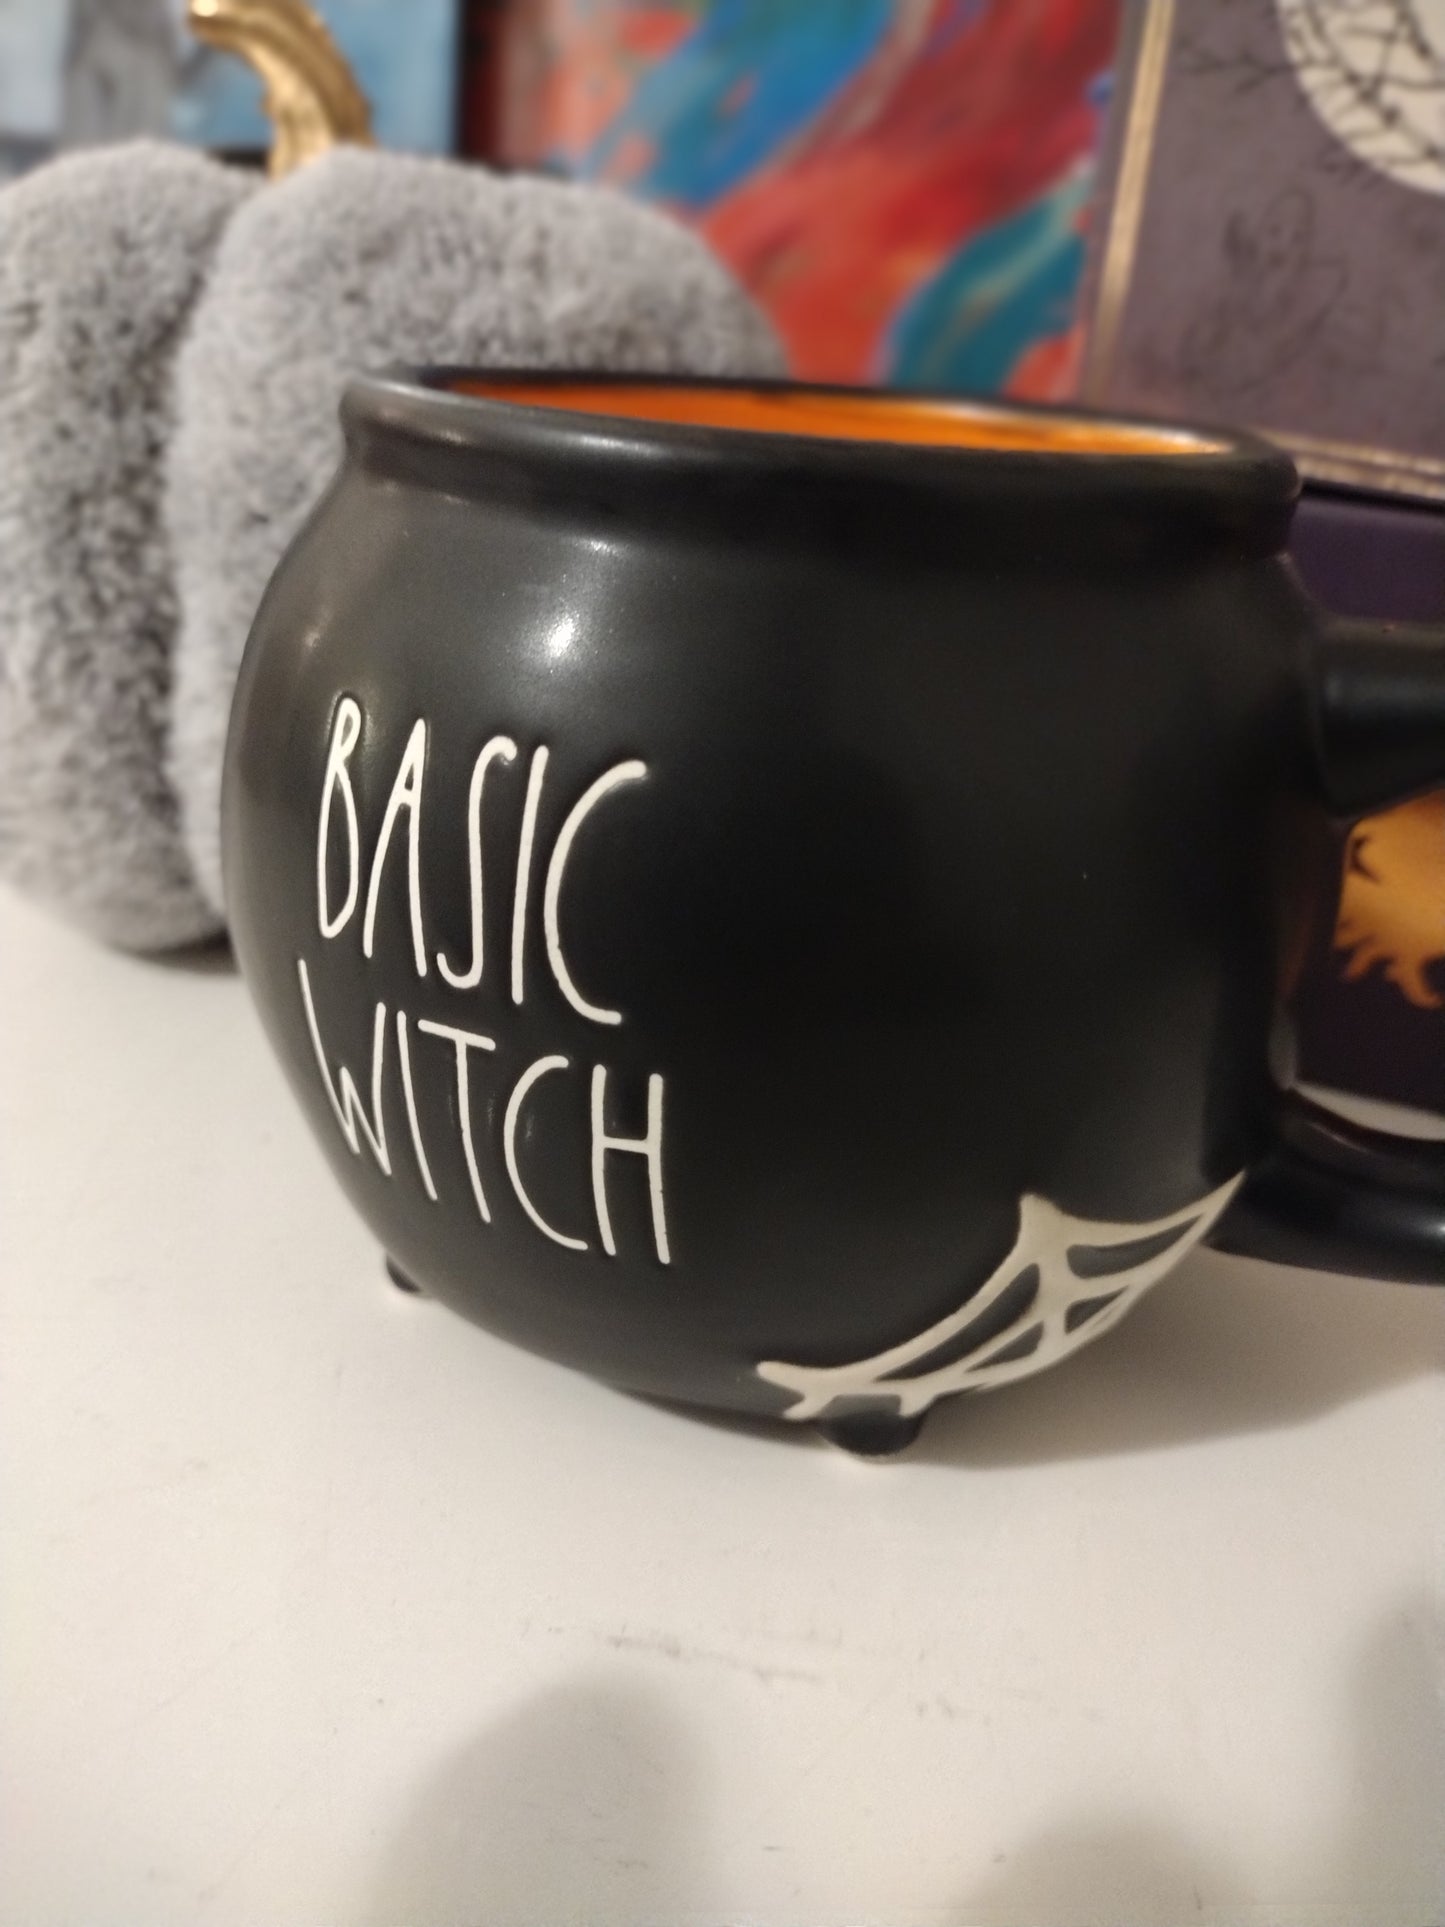 Basic Witch Cauldron Candle Mug